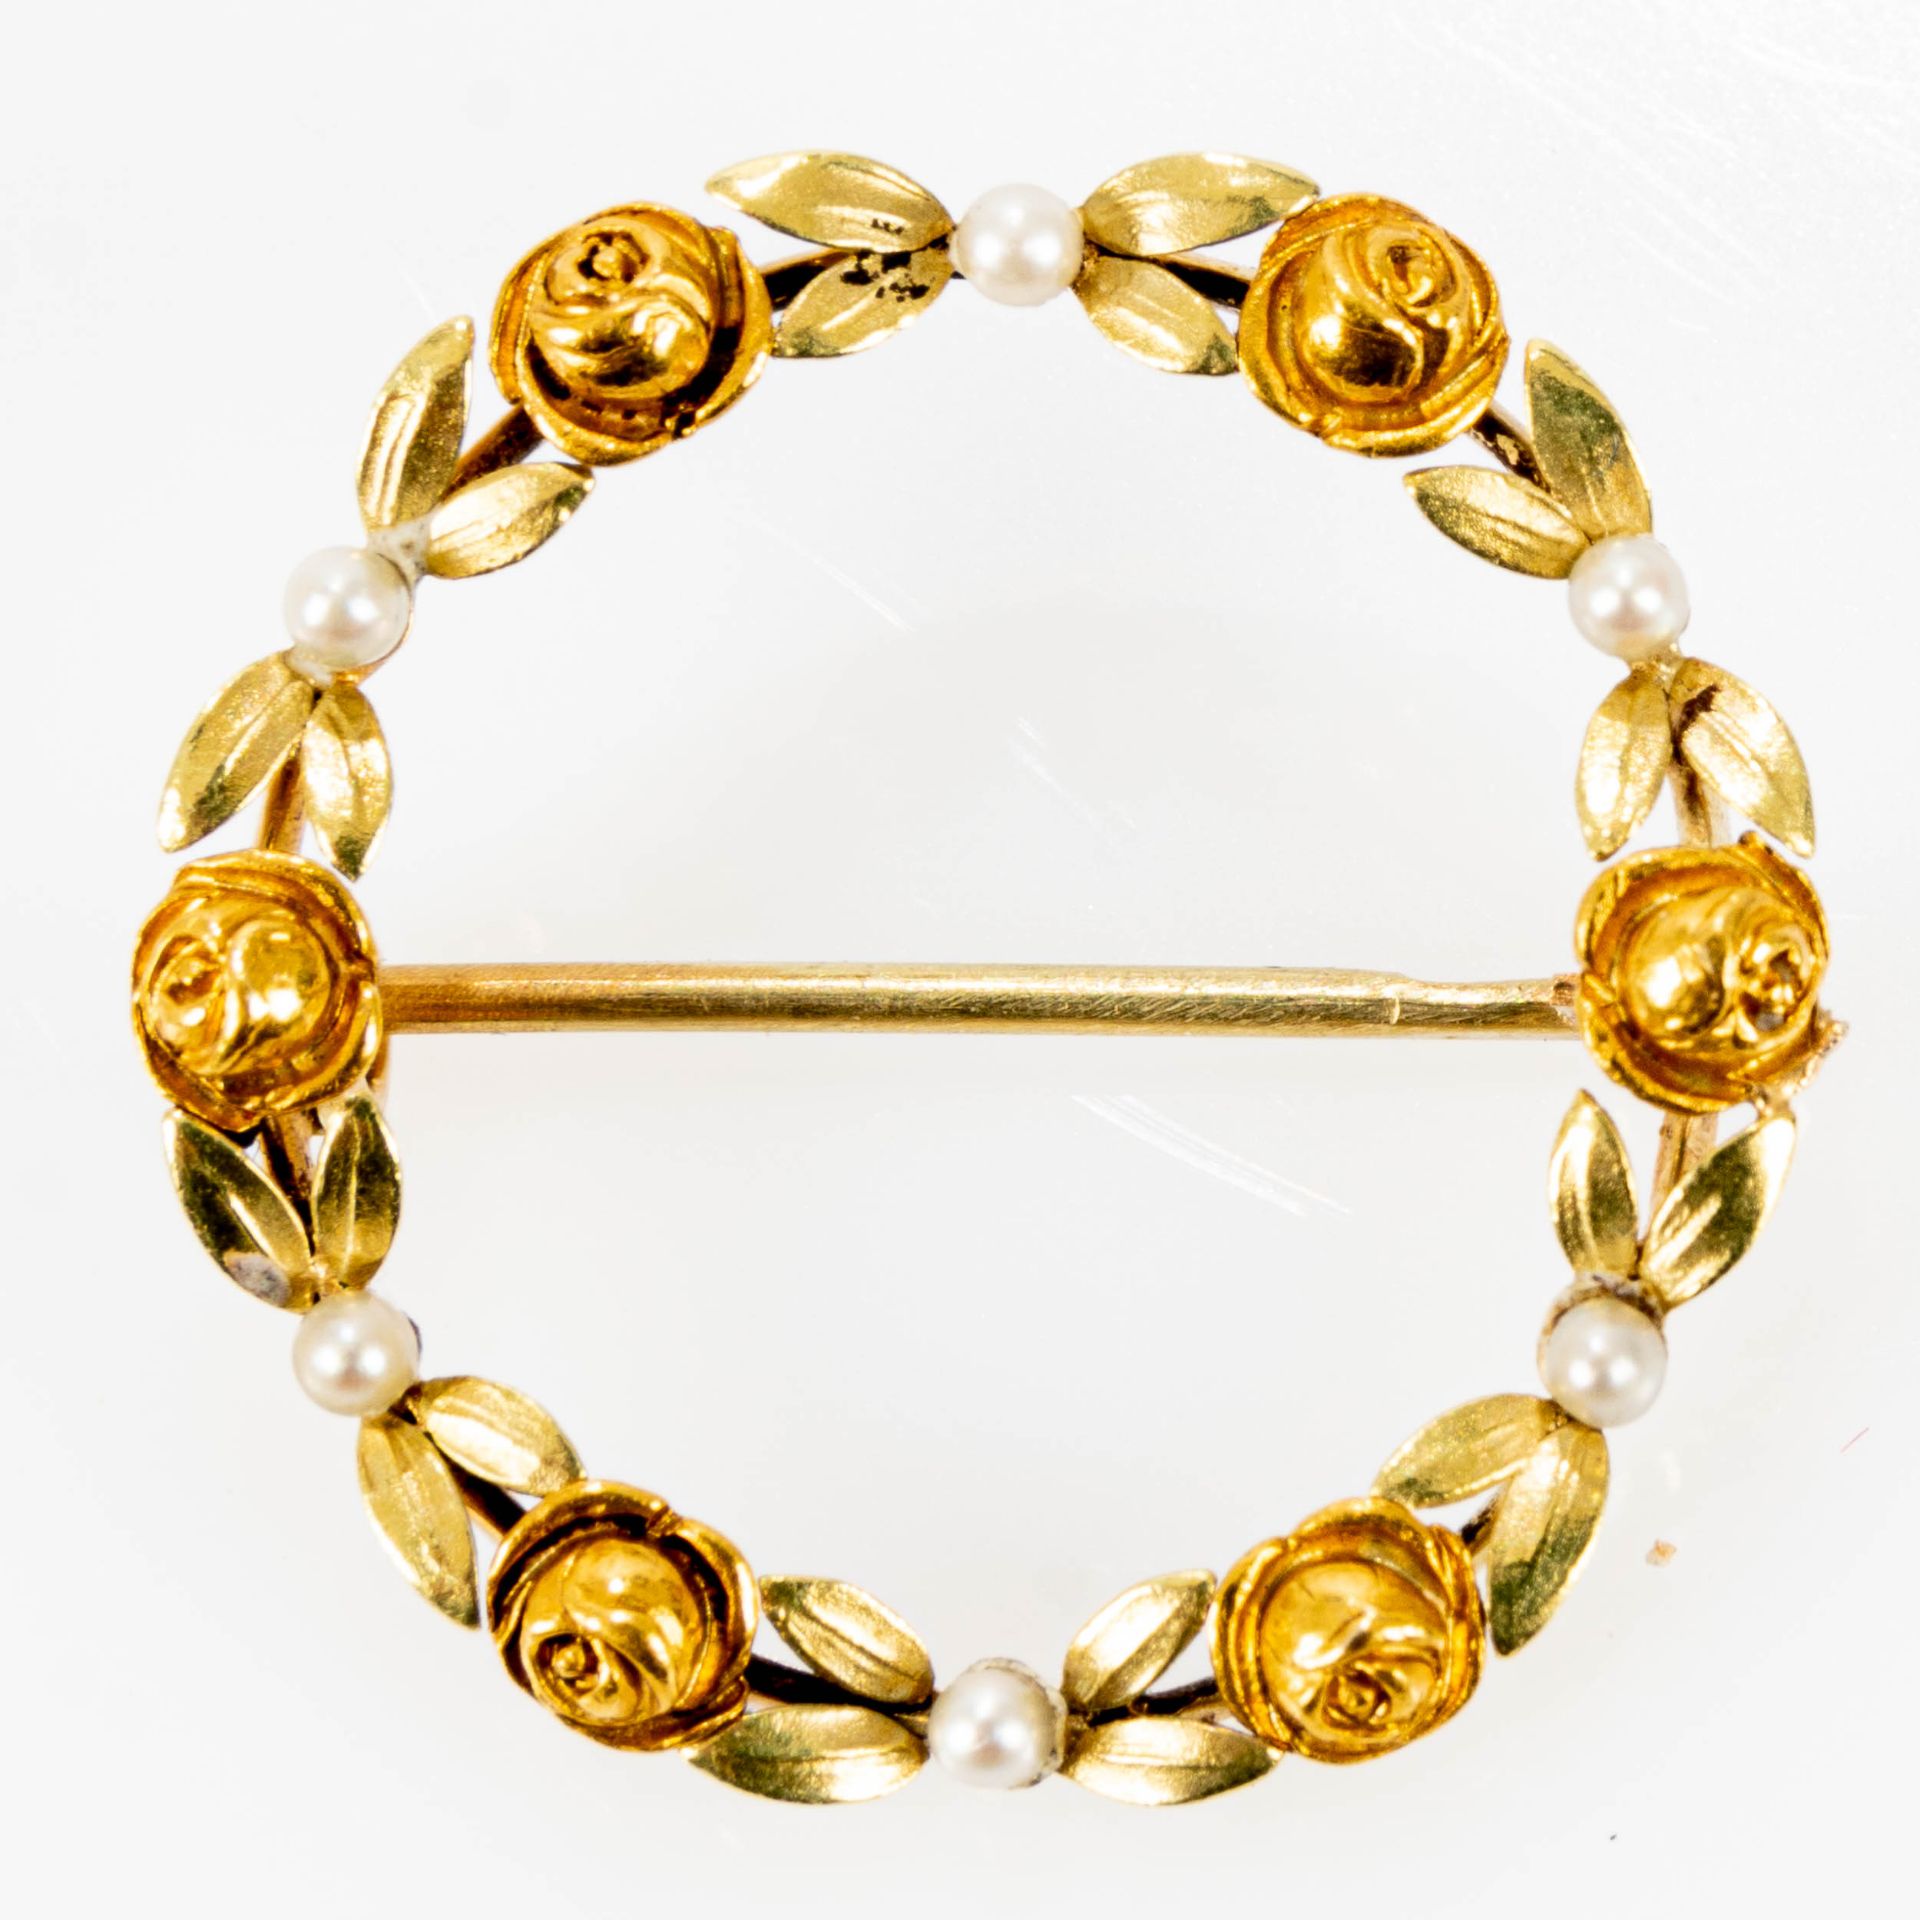 Offene Rosenkranz-Brosche mit insgesamt 6 kleinen silbrig-weiß lüstrierenden Perlen besetzt, rückwä